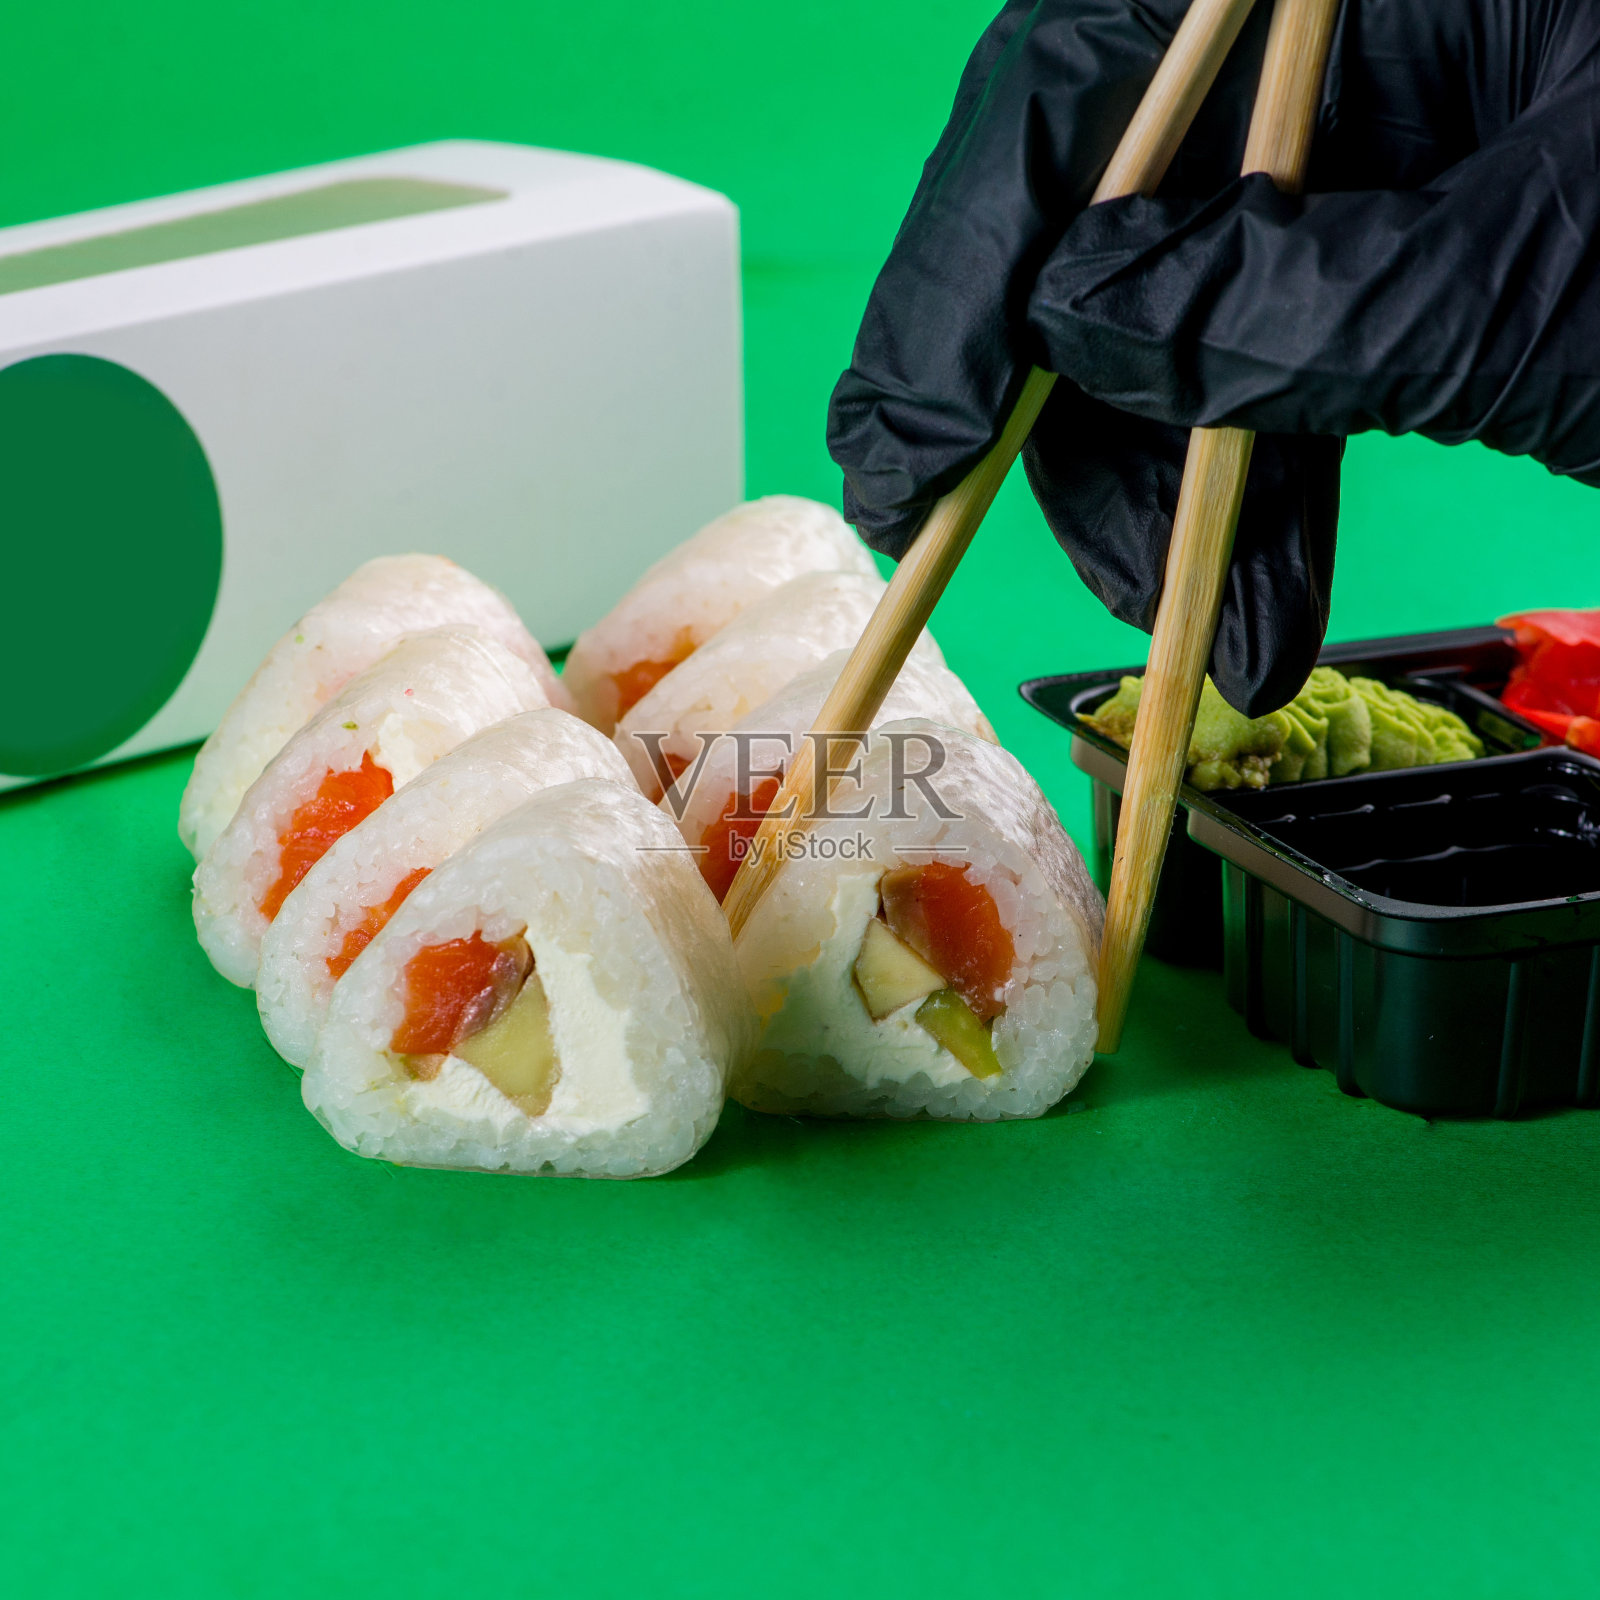 蘸酱的寿司是用筷子吃的。白色寿司，奶油芝士，绿色背景照片摄影图片